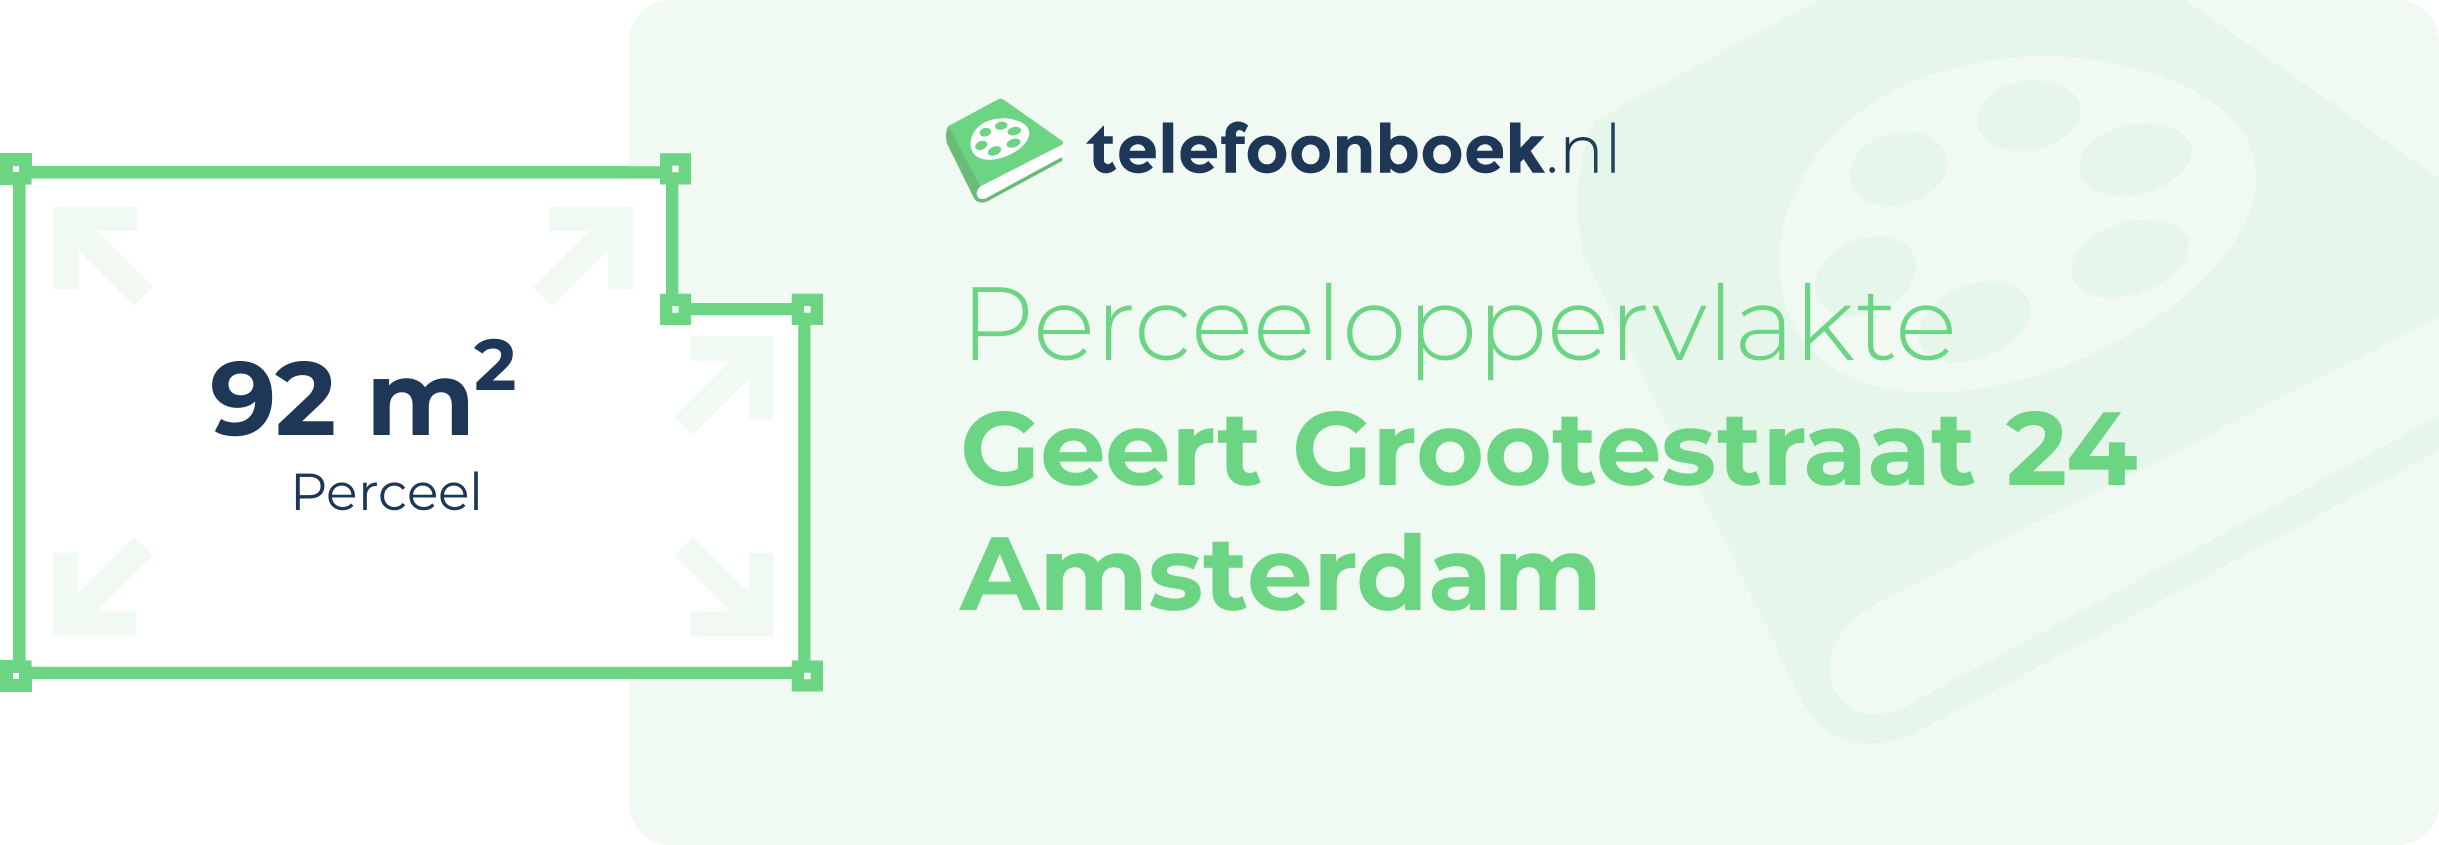 Perceeloppervlakte Geert Grootestraat 24 Amsterdam